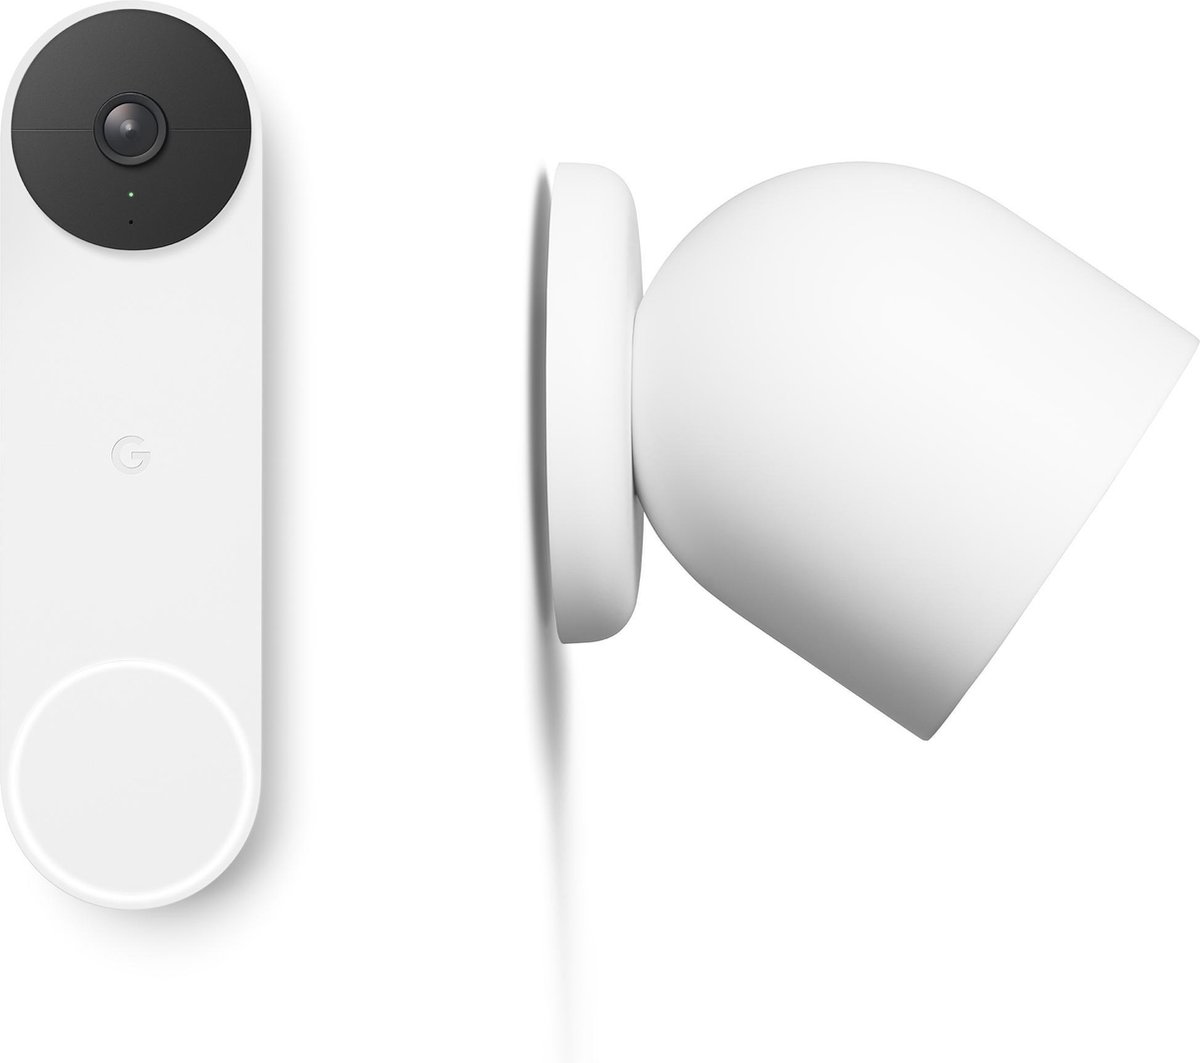 Google Security Bundel (Doorbell + Cam)